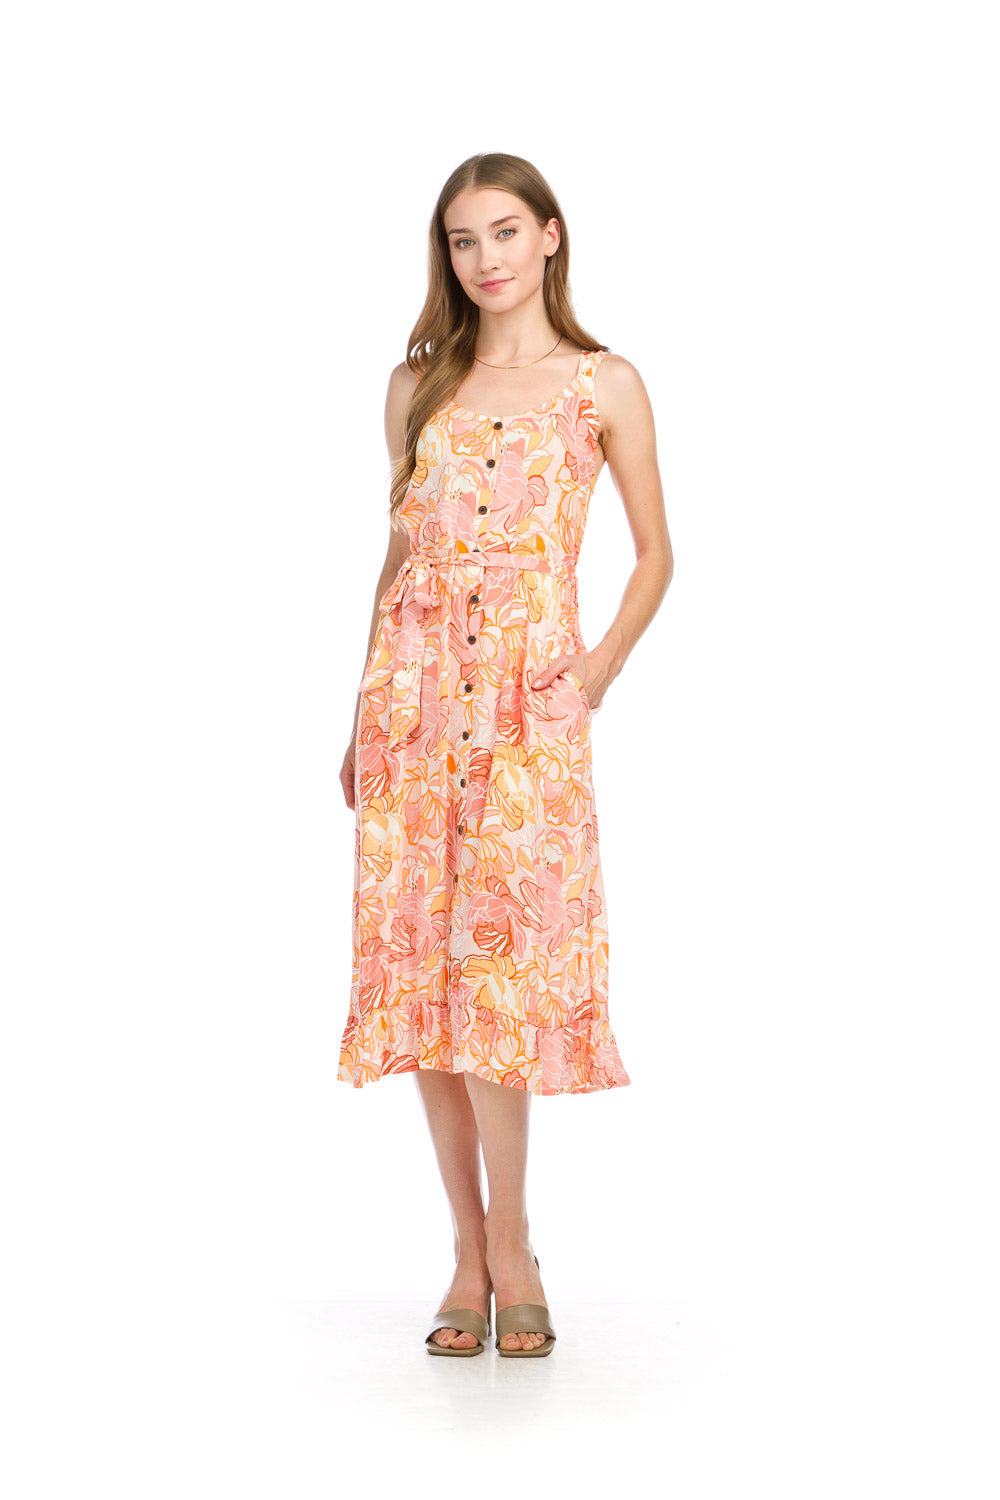 PD16714 ORANG Floral Crinkled Dress with Pockets & Tie Belt